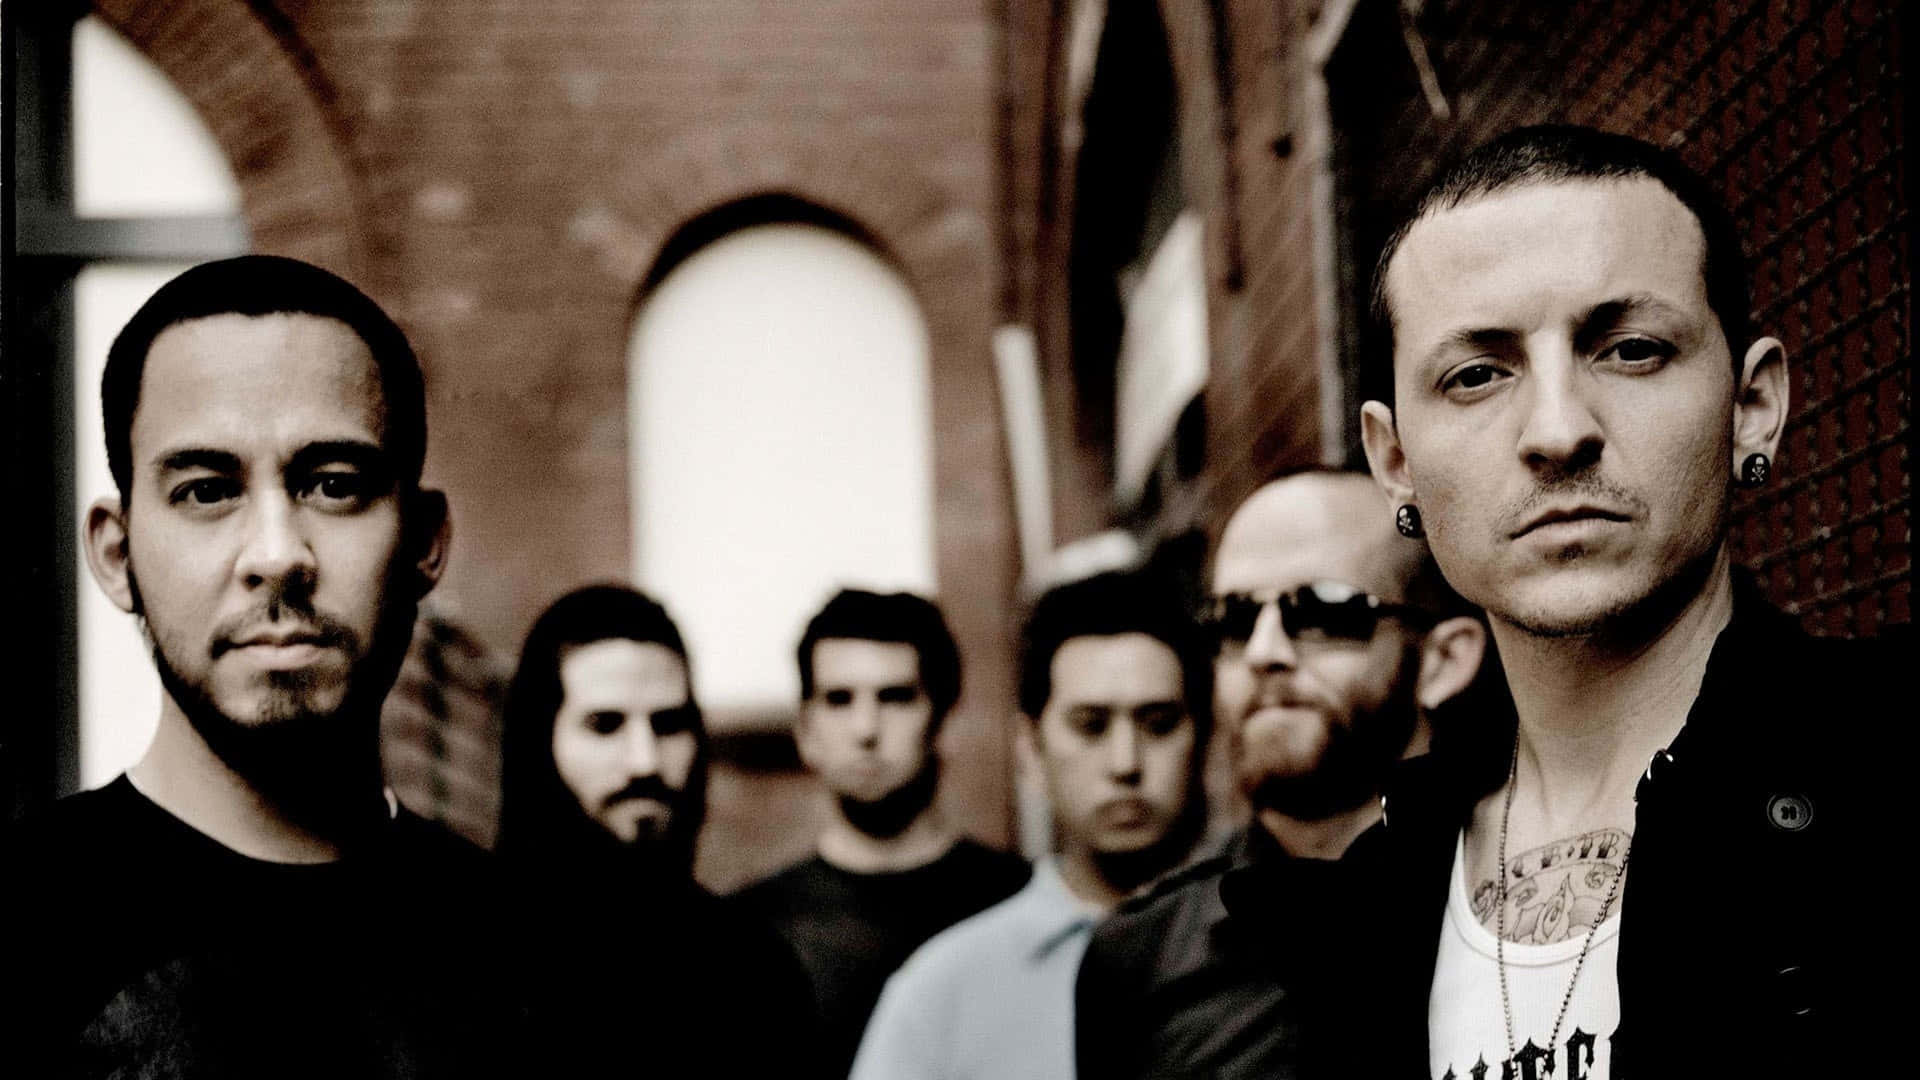 Det ikoniske alternative rock band, Linkin Park, er fremhævet i denne tapet. Wallpaper